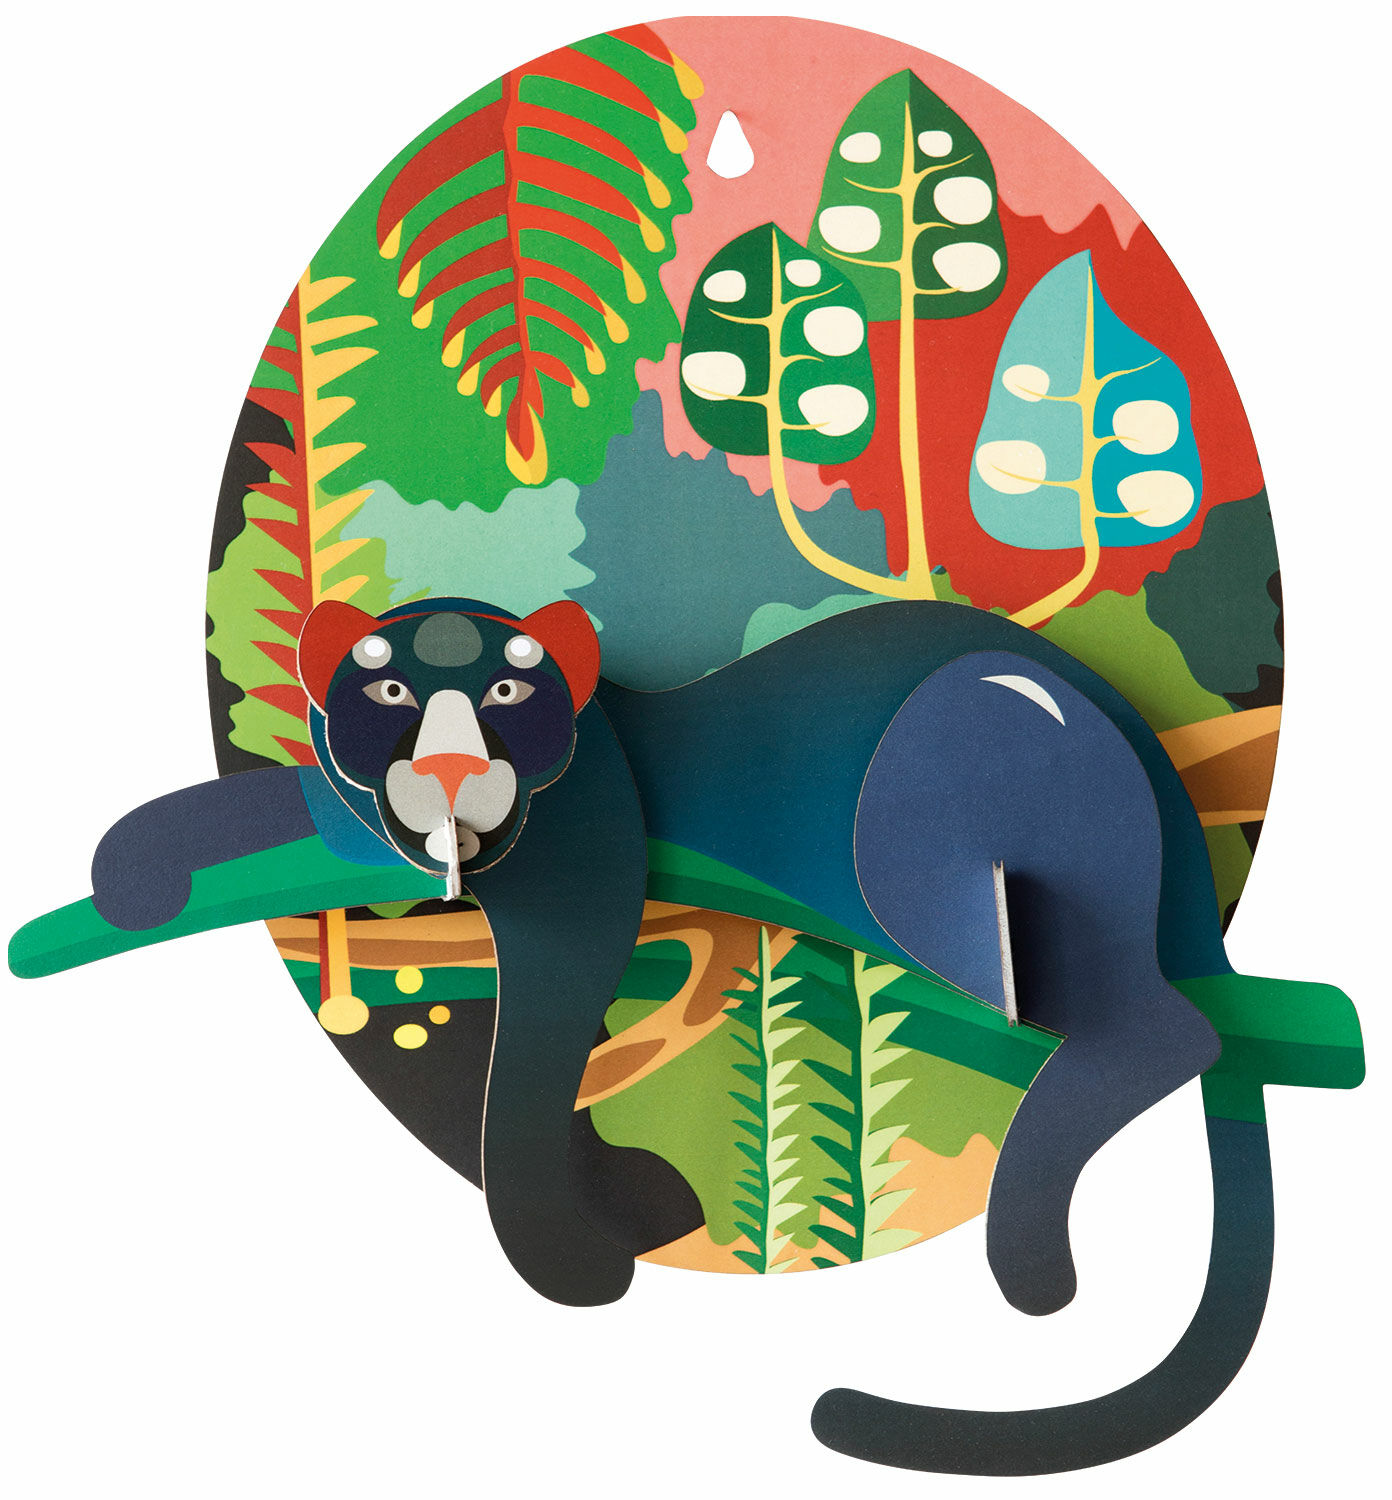 3D-Wandobjekt "Jungle Puma" aus recyceltem Karton, DIY von studio ROOF